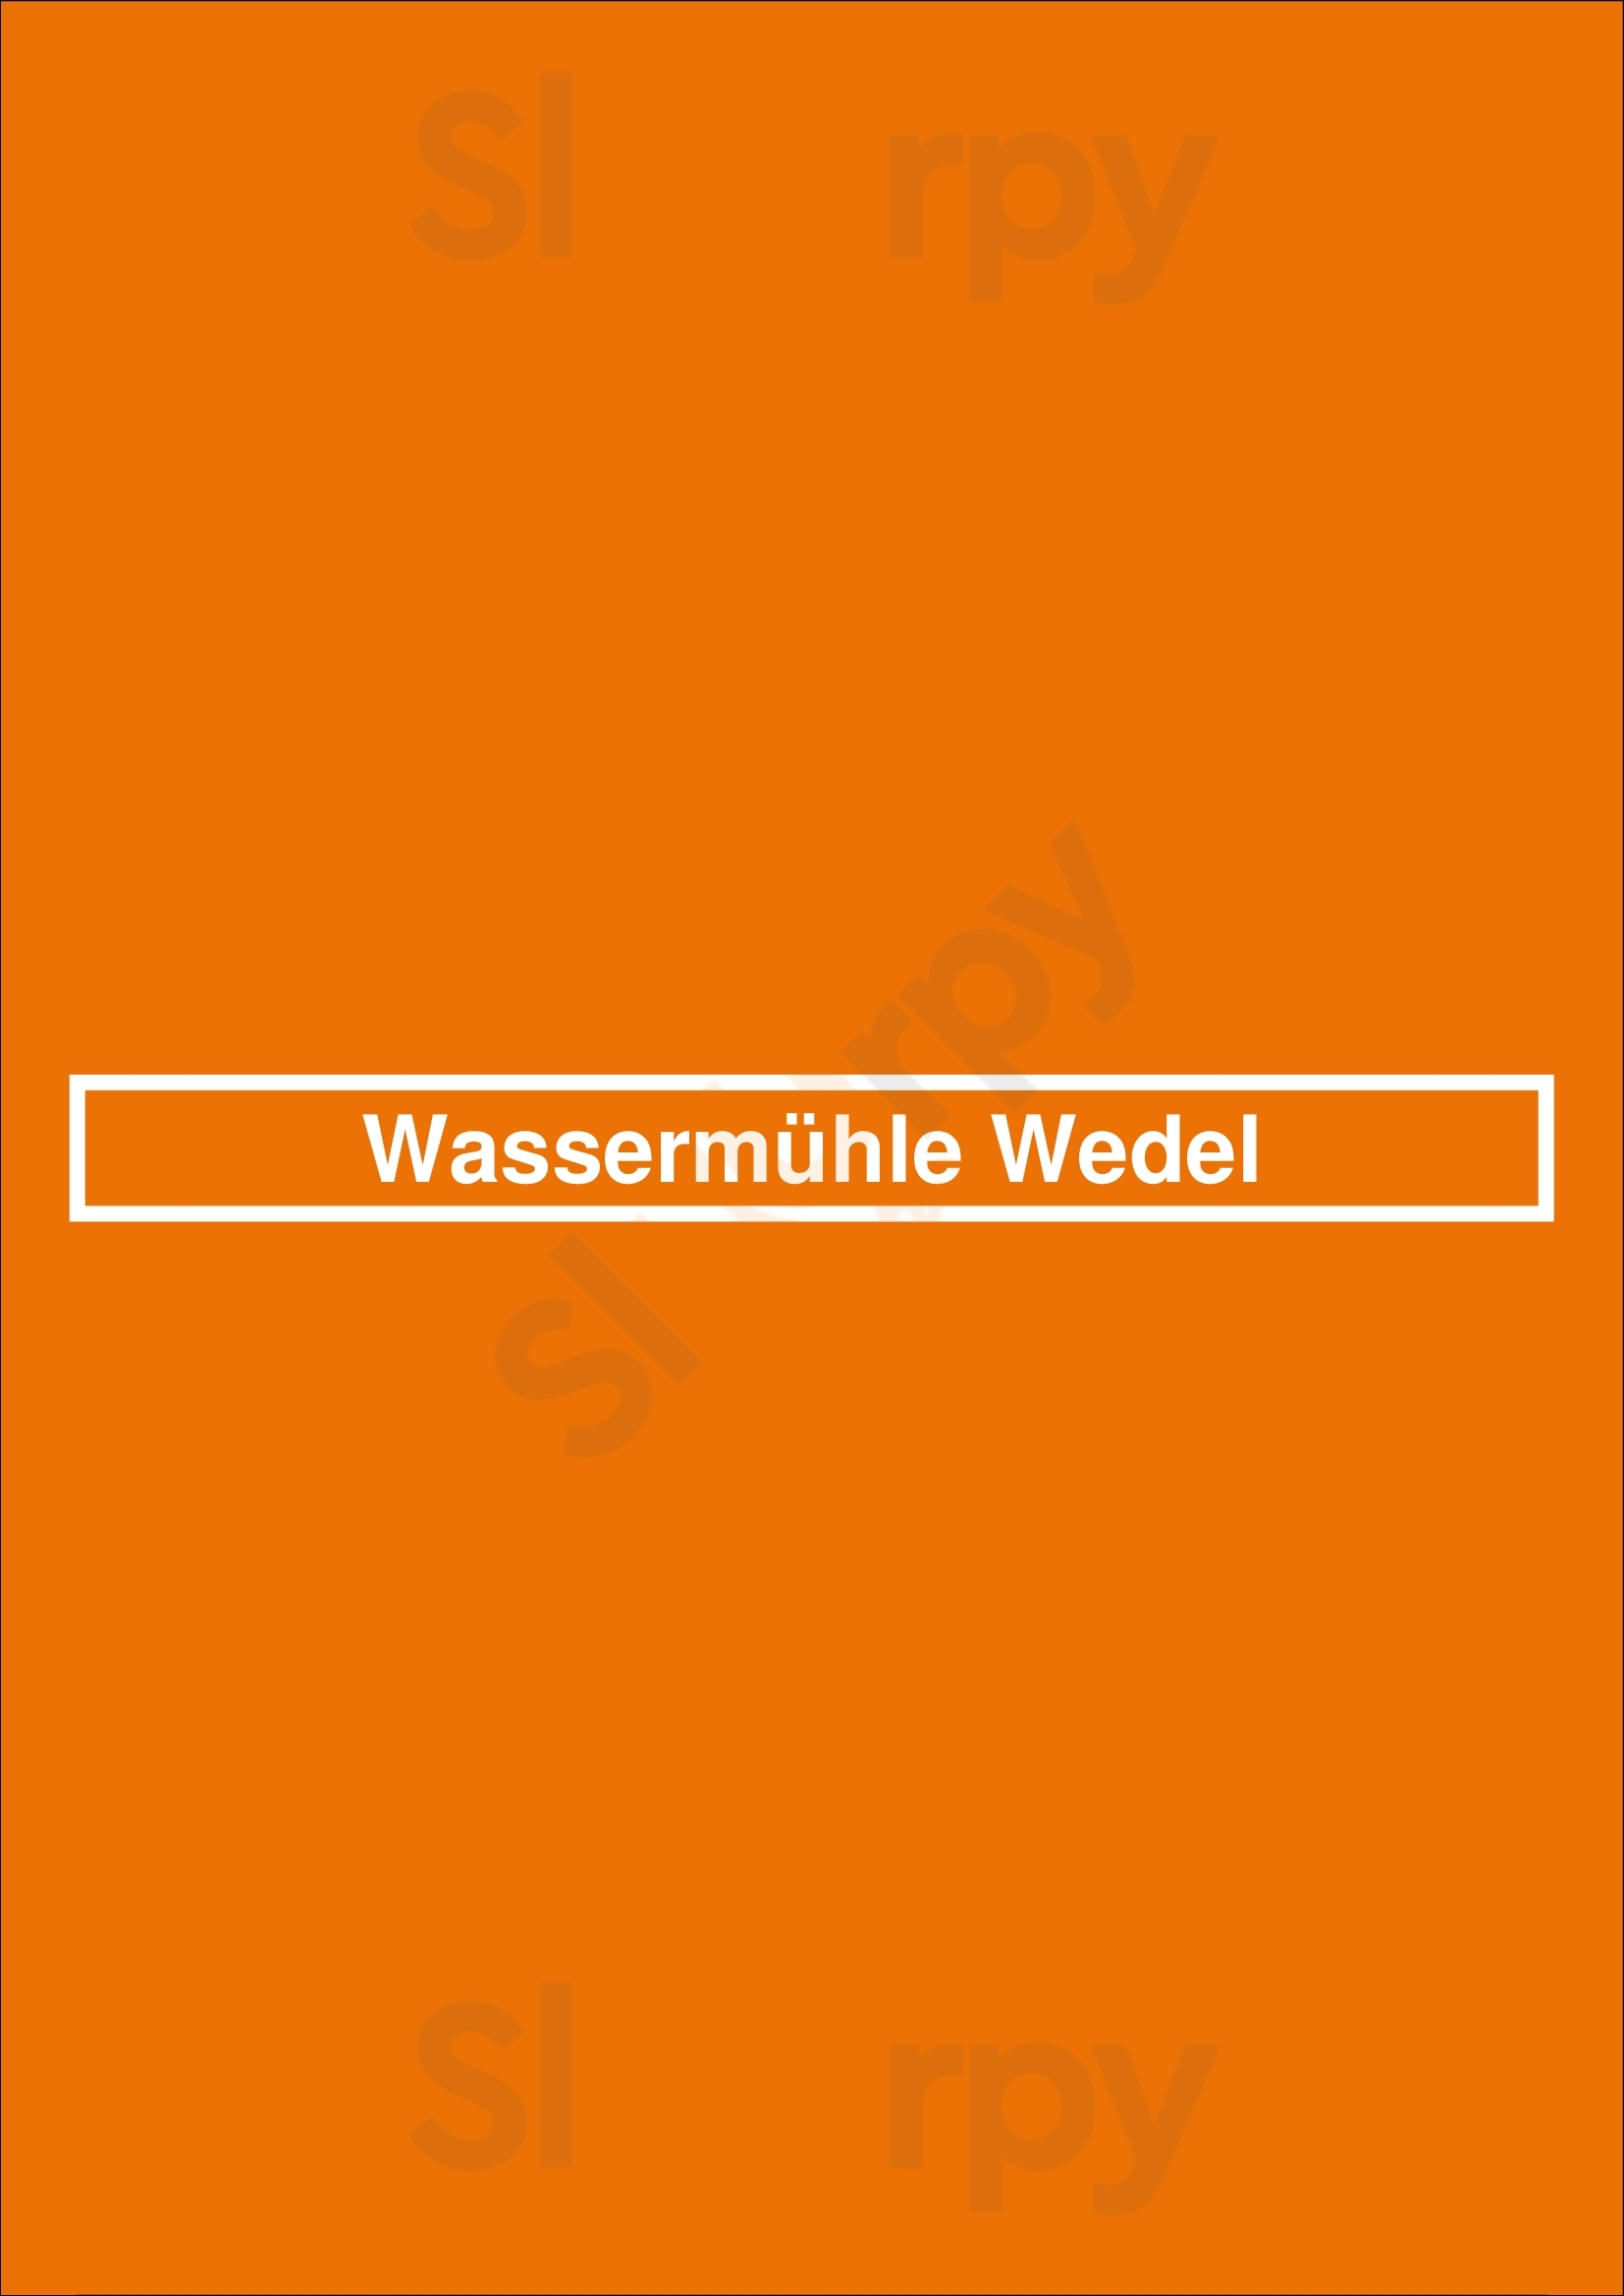 Wassermühle Wedel Wedel Menu - 1